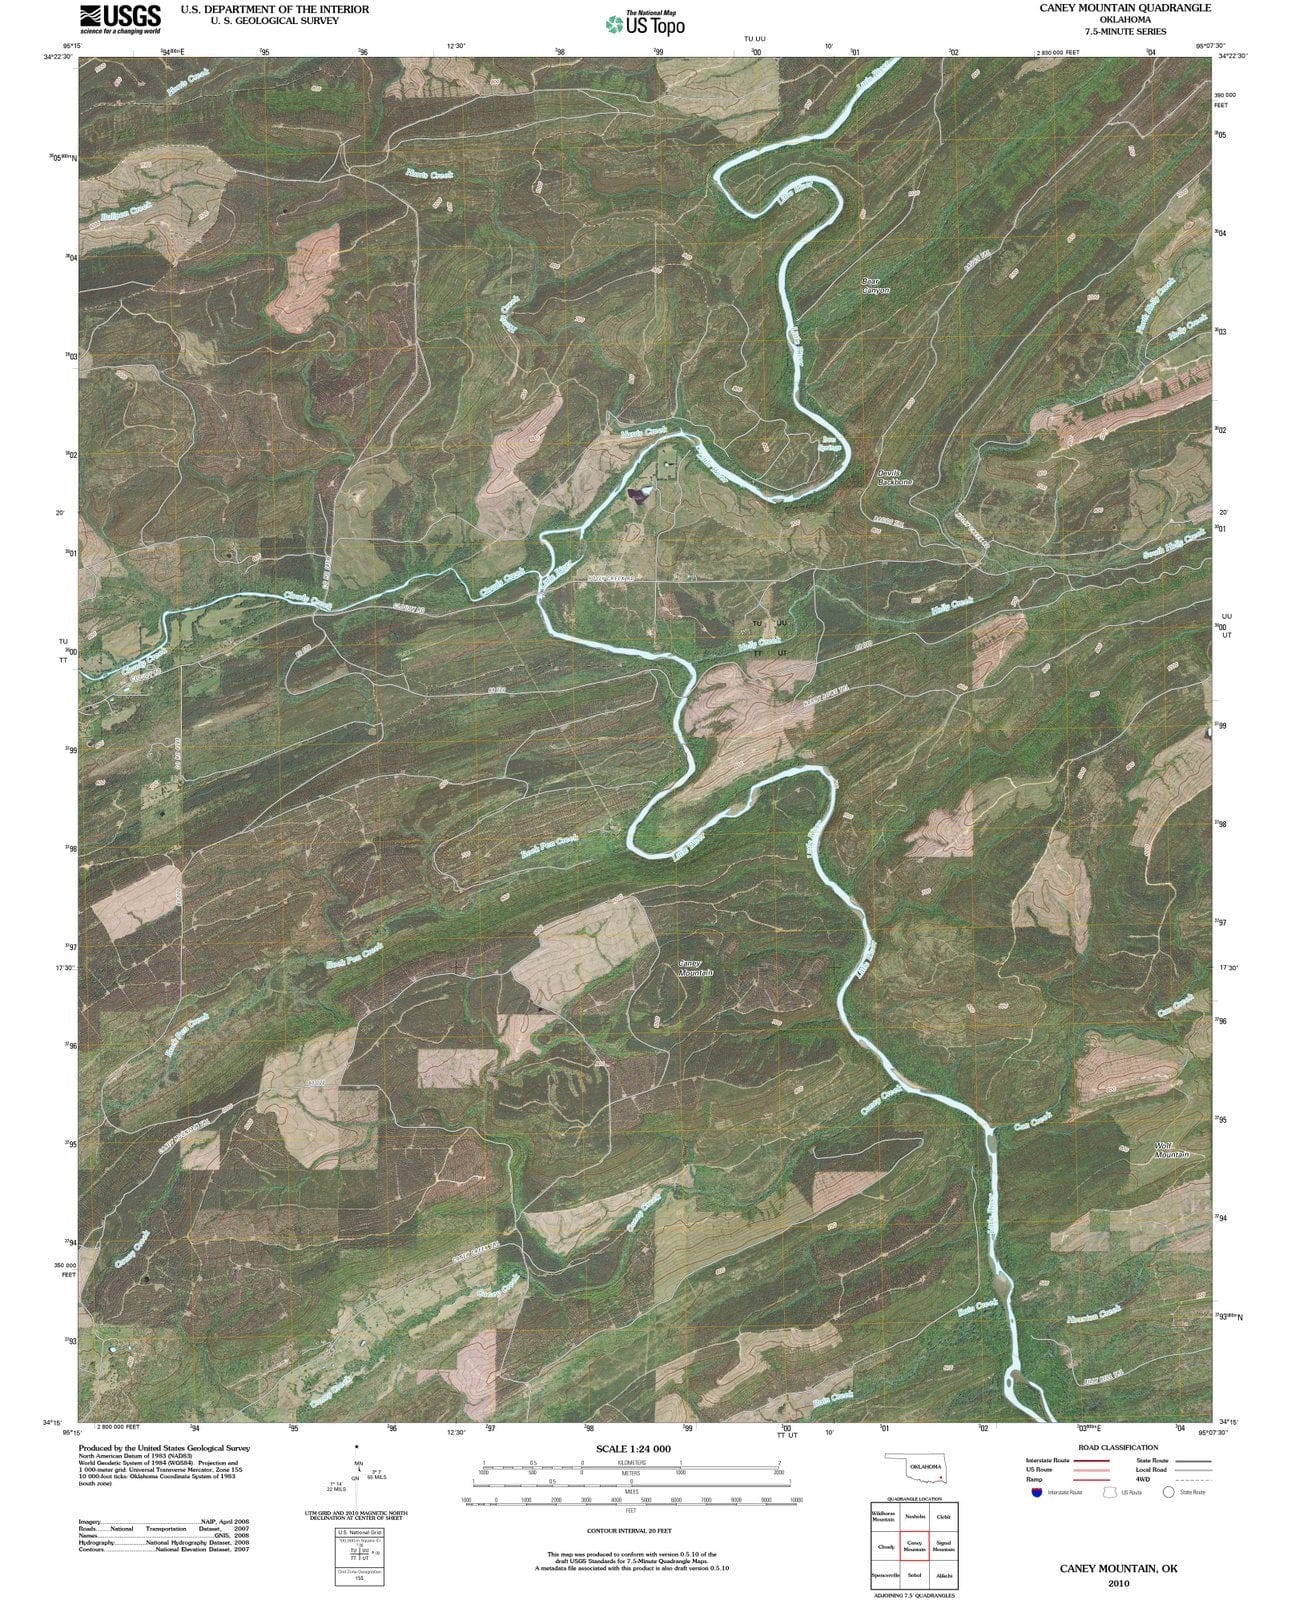 2010 Caney Mountain, OK - Oklahoma - USGS Topographic Map